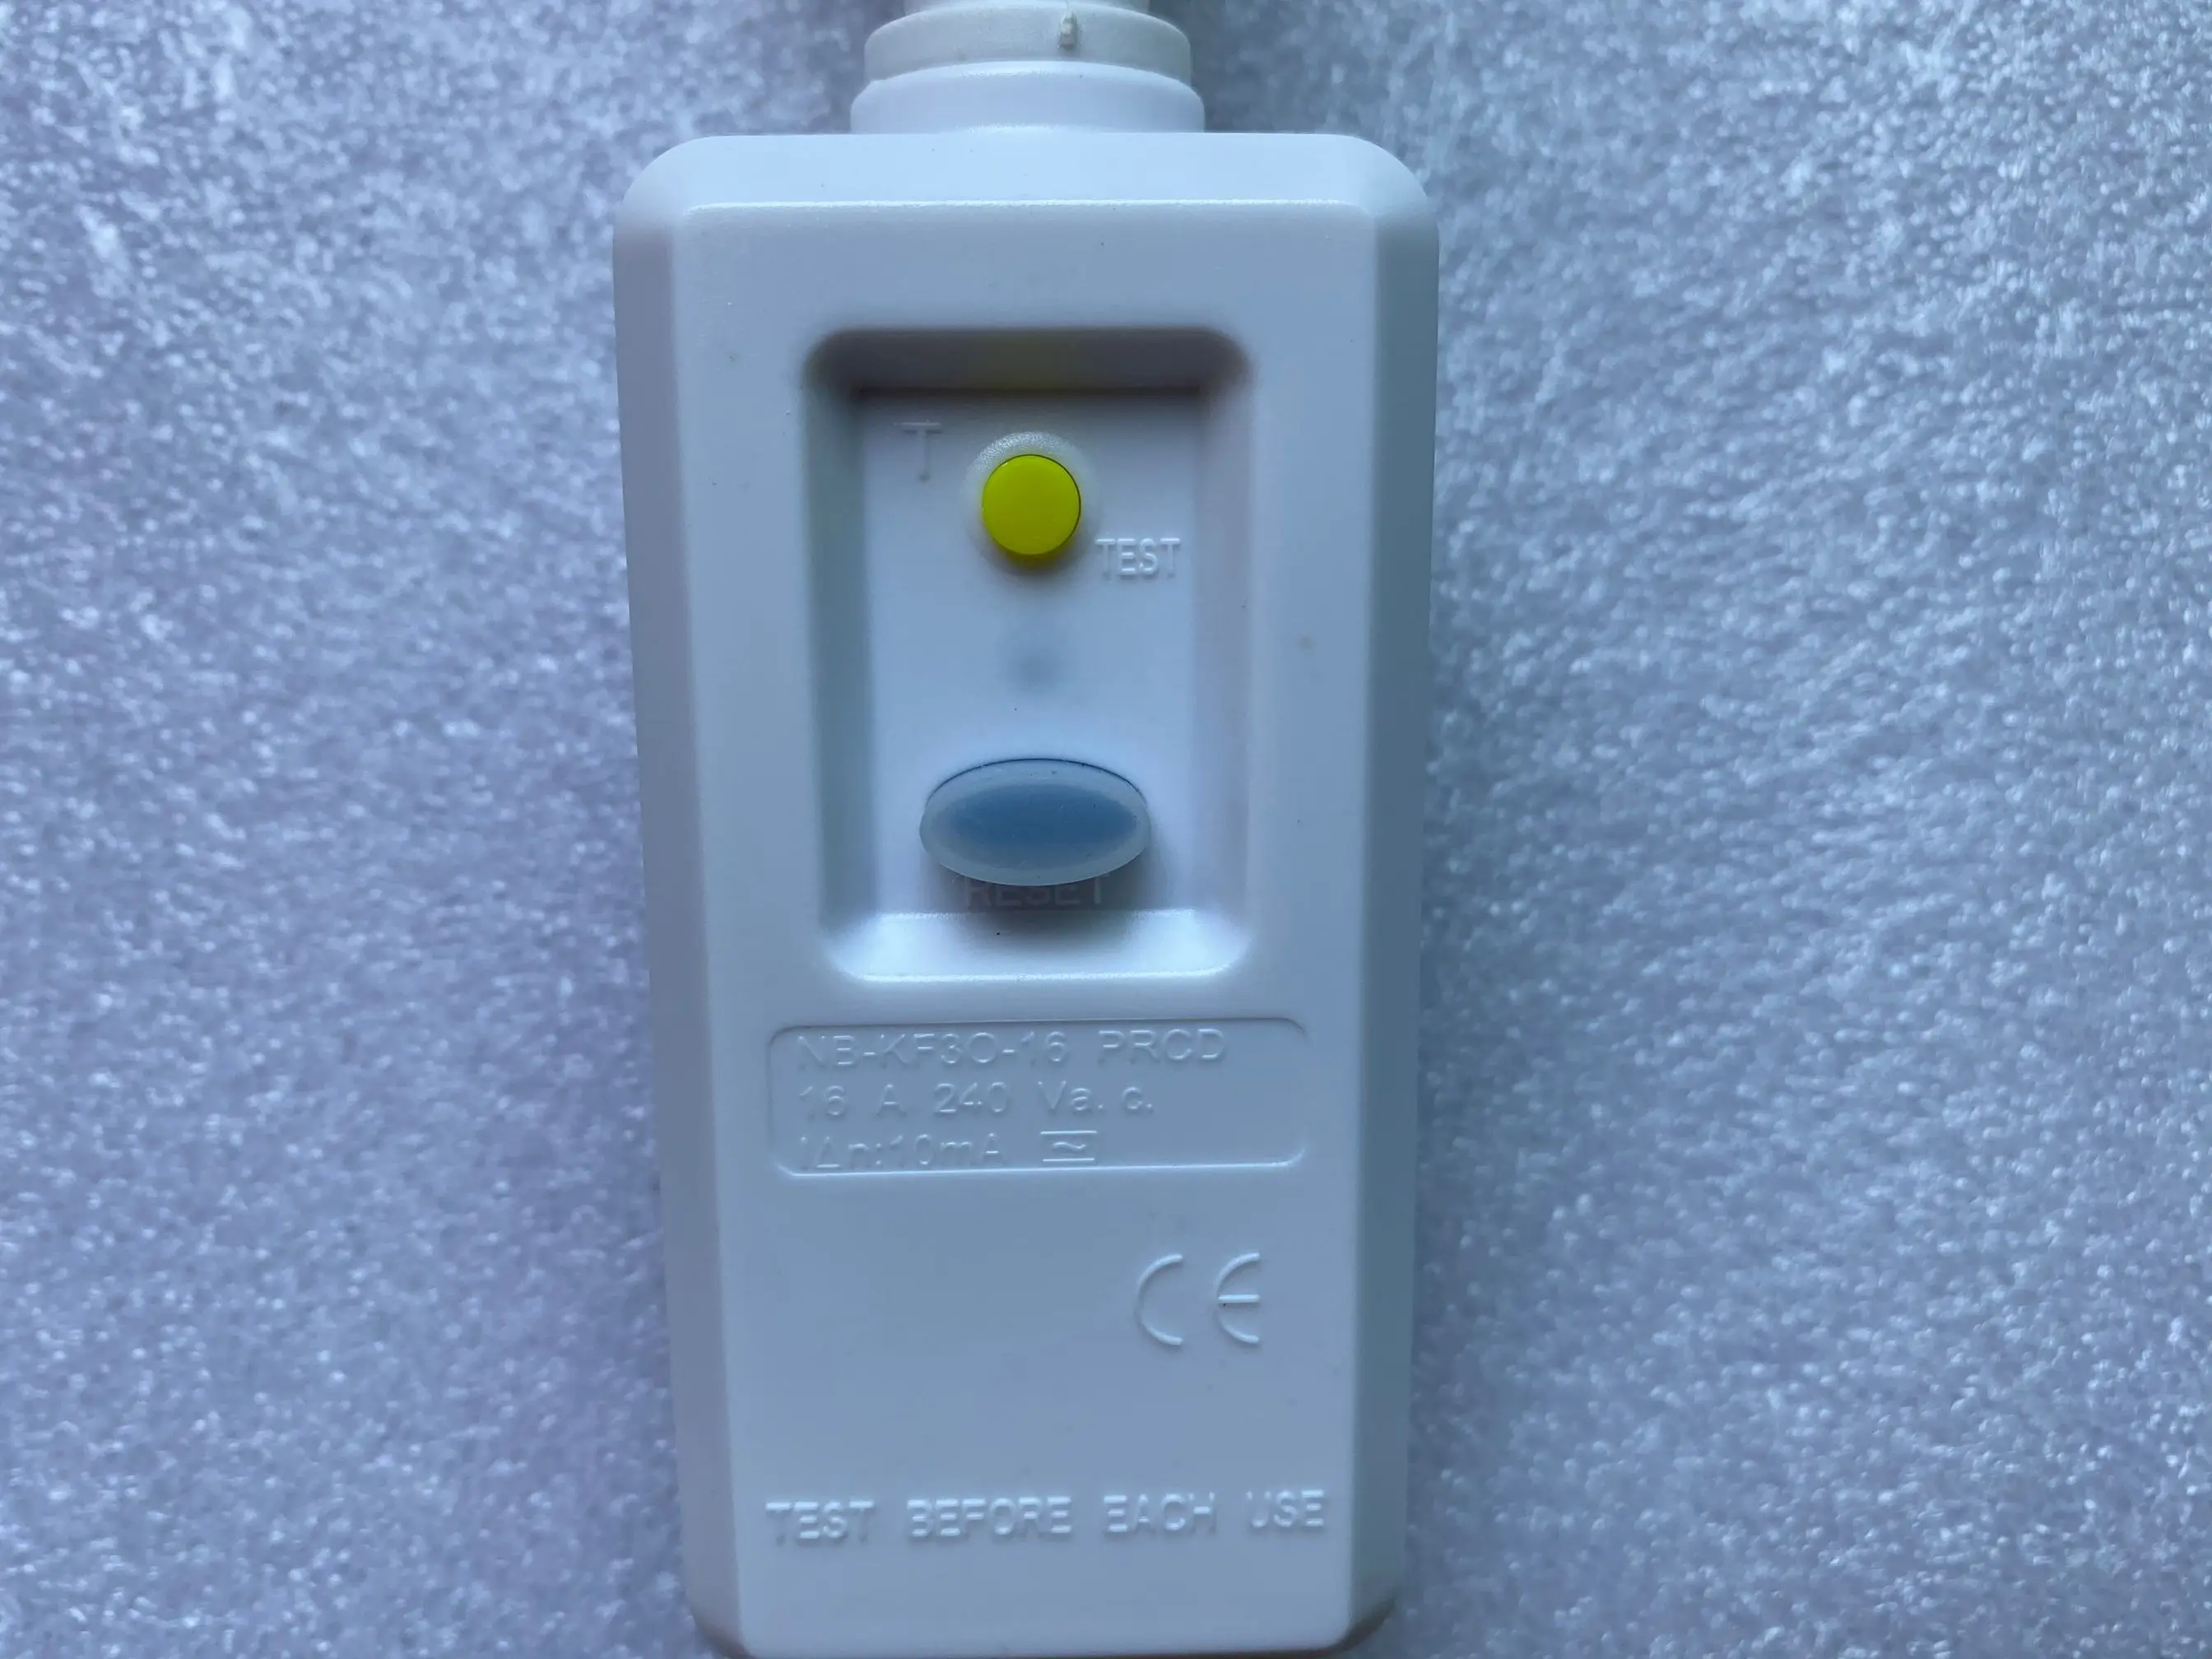 16А 220 в 240 В ЕС вилка GFCI защита от утечки безопасность УЗО гнездо адаптер домашний выключатель вырез выключатель питания переключатель